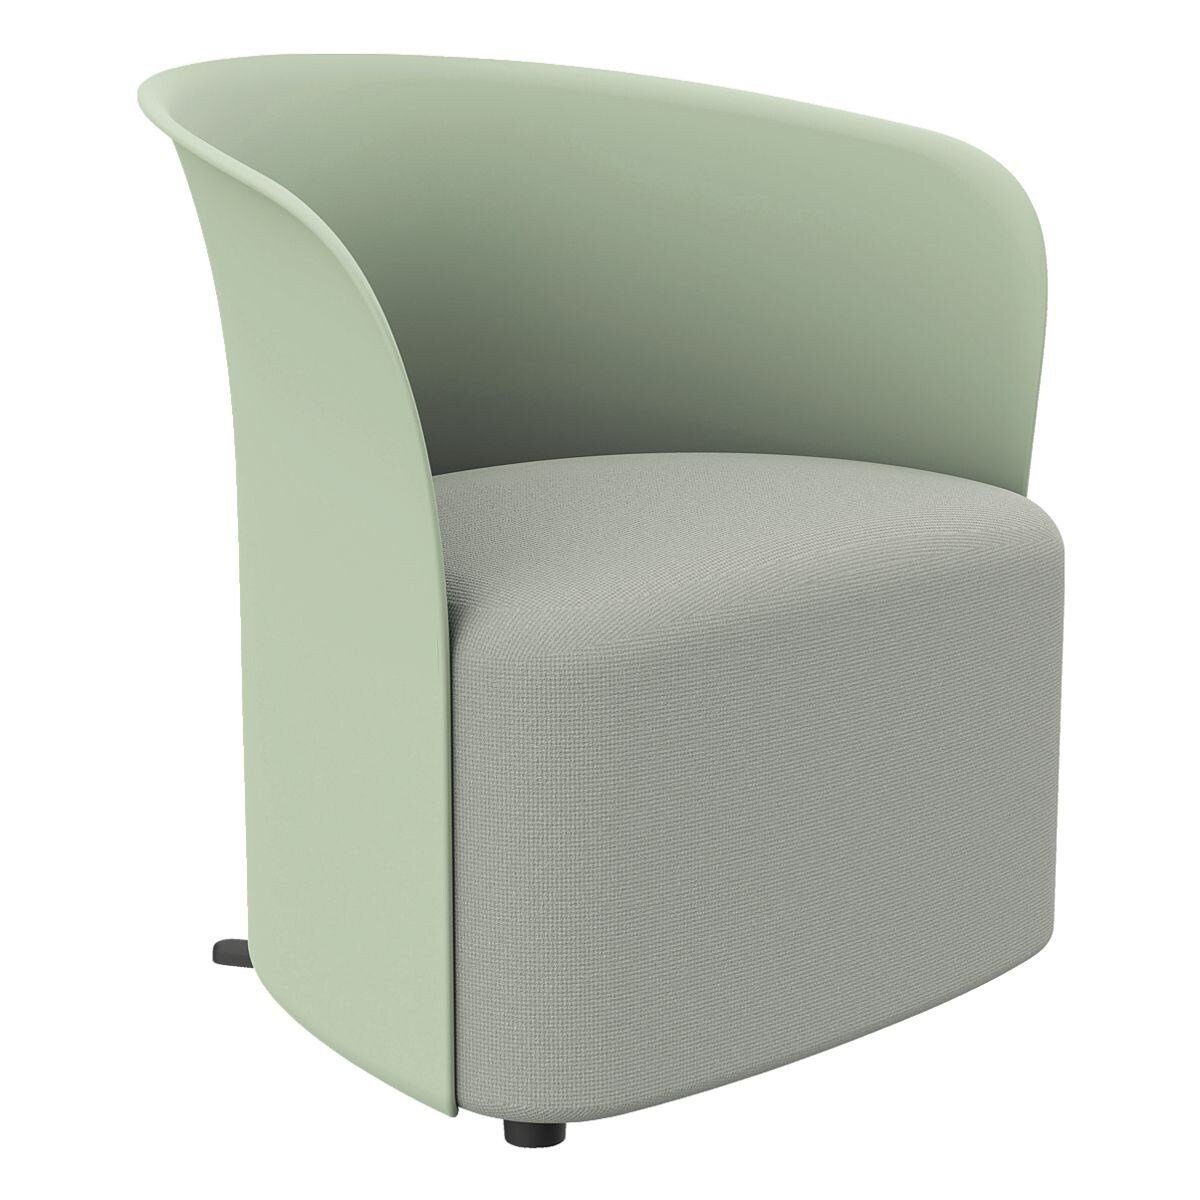 PAPERFLOW Sessel Crown, Clubsessel, durchgehende Rückenlehne, Standfüße, Sitzhöhe 38 cm grün